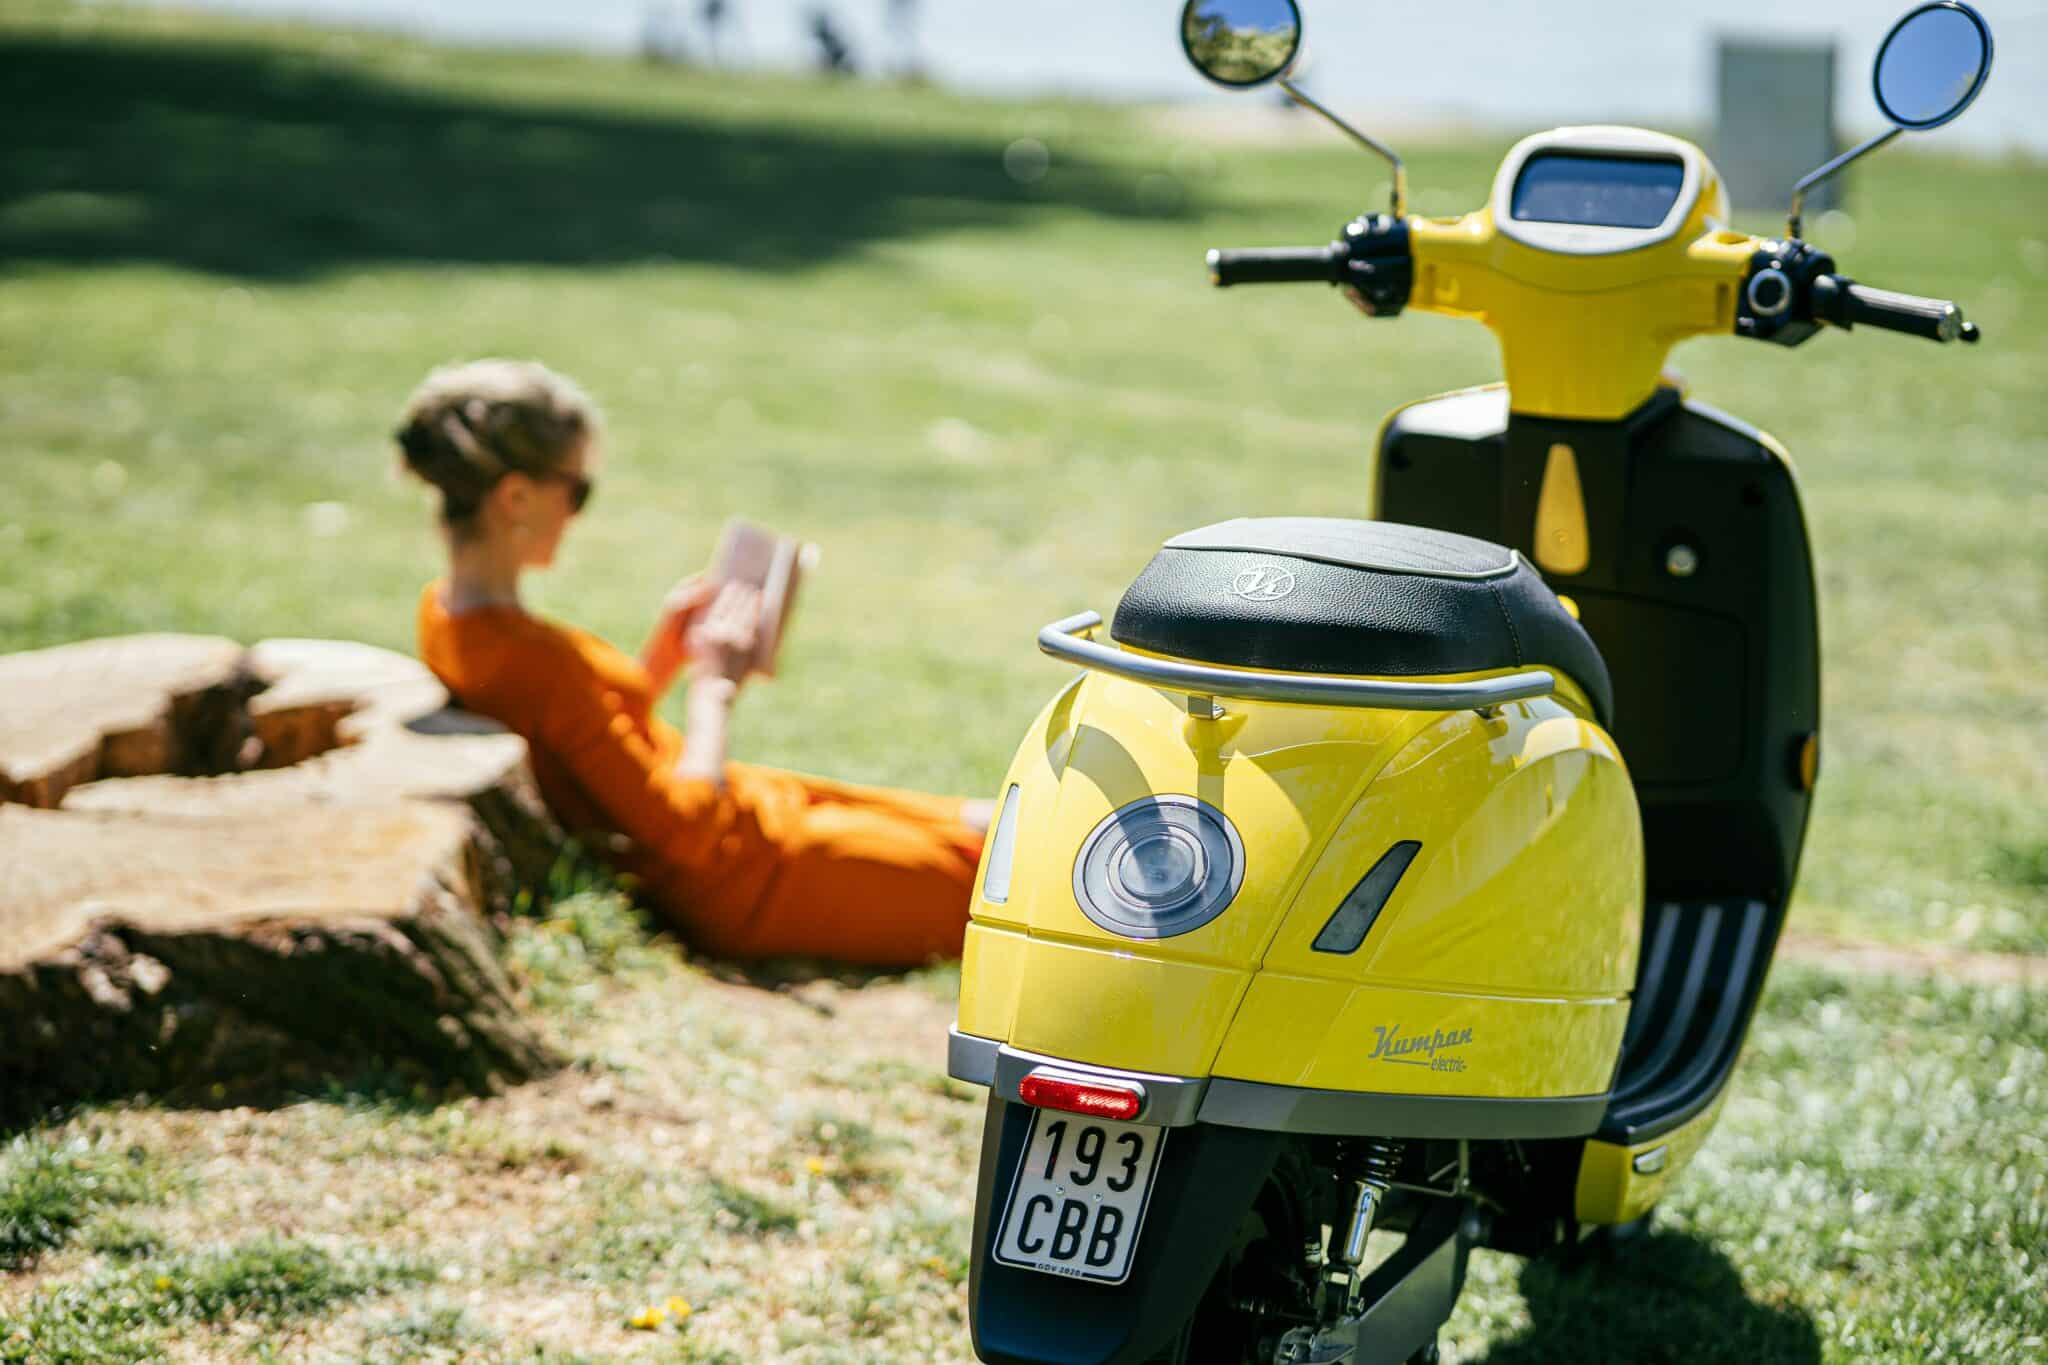 découvrez notre large gamme de motos électriques pour une conduite écologique et innovante. trouvez votre modèle idéal dès aujourd'hui.